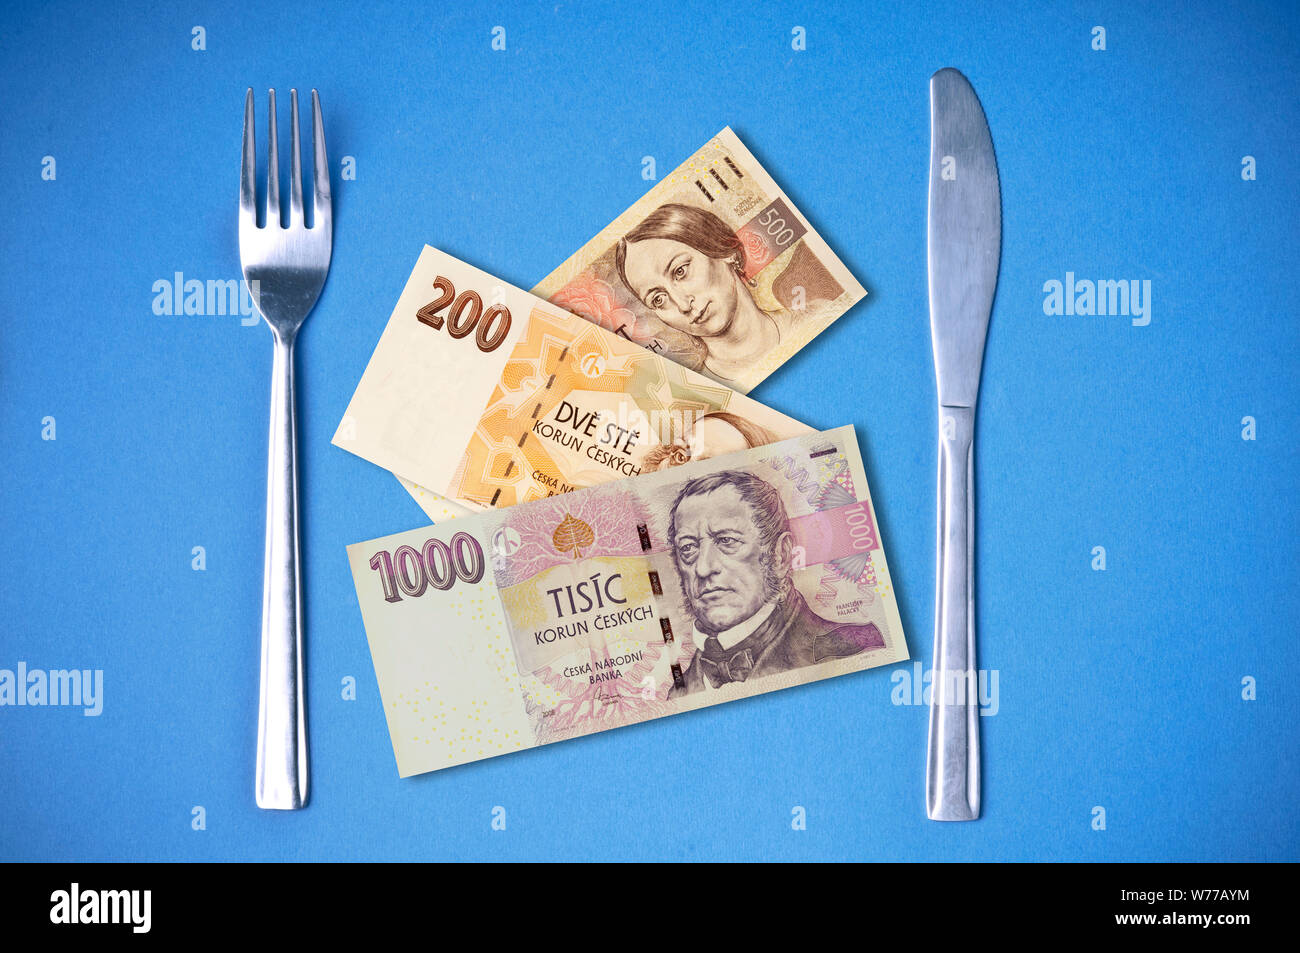 Konzeptionelle Bild von Messer und Gabel mit der Tschechischen Krone Banknoten statt Nahrung Stockfoto